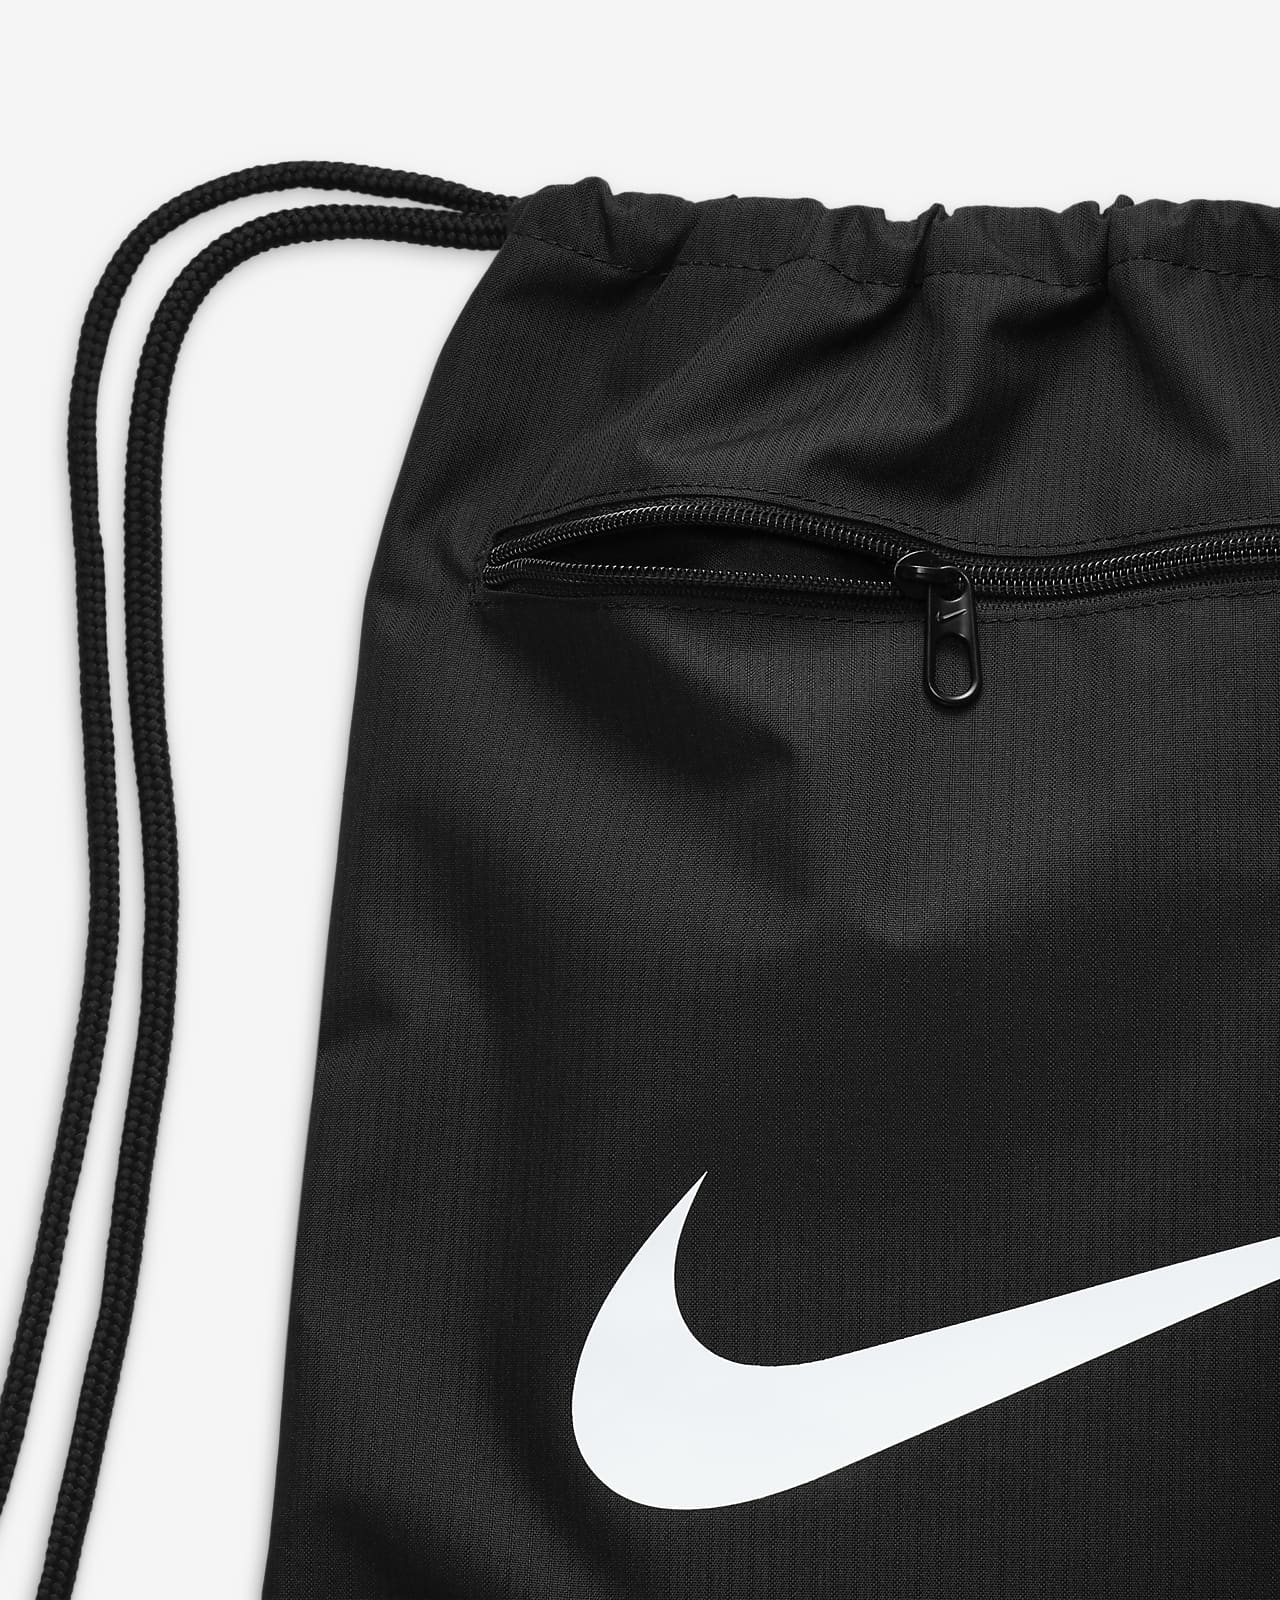 Bag Nike Brasilia 9.5 XS